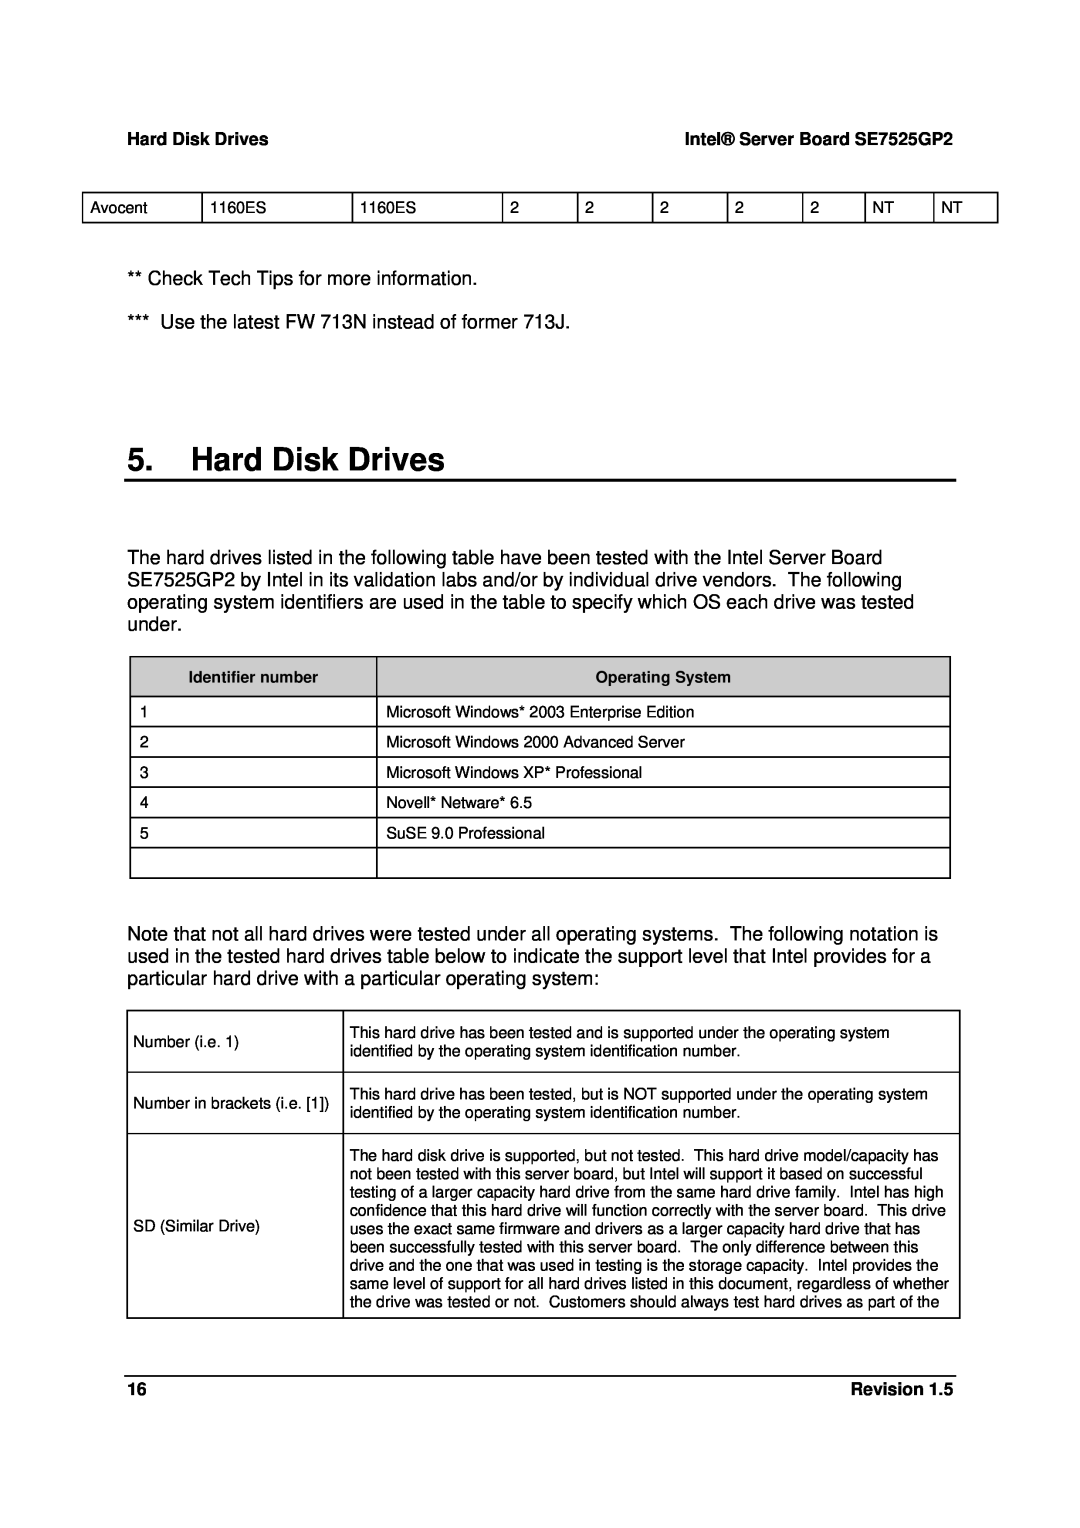 Intel SE7525GP2 manual Hard Disk Drives 